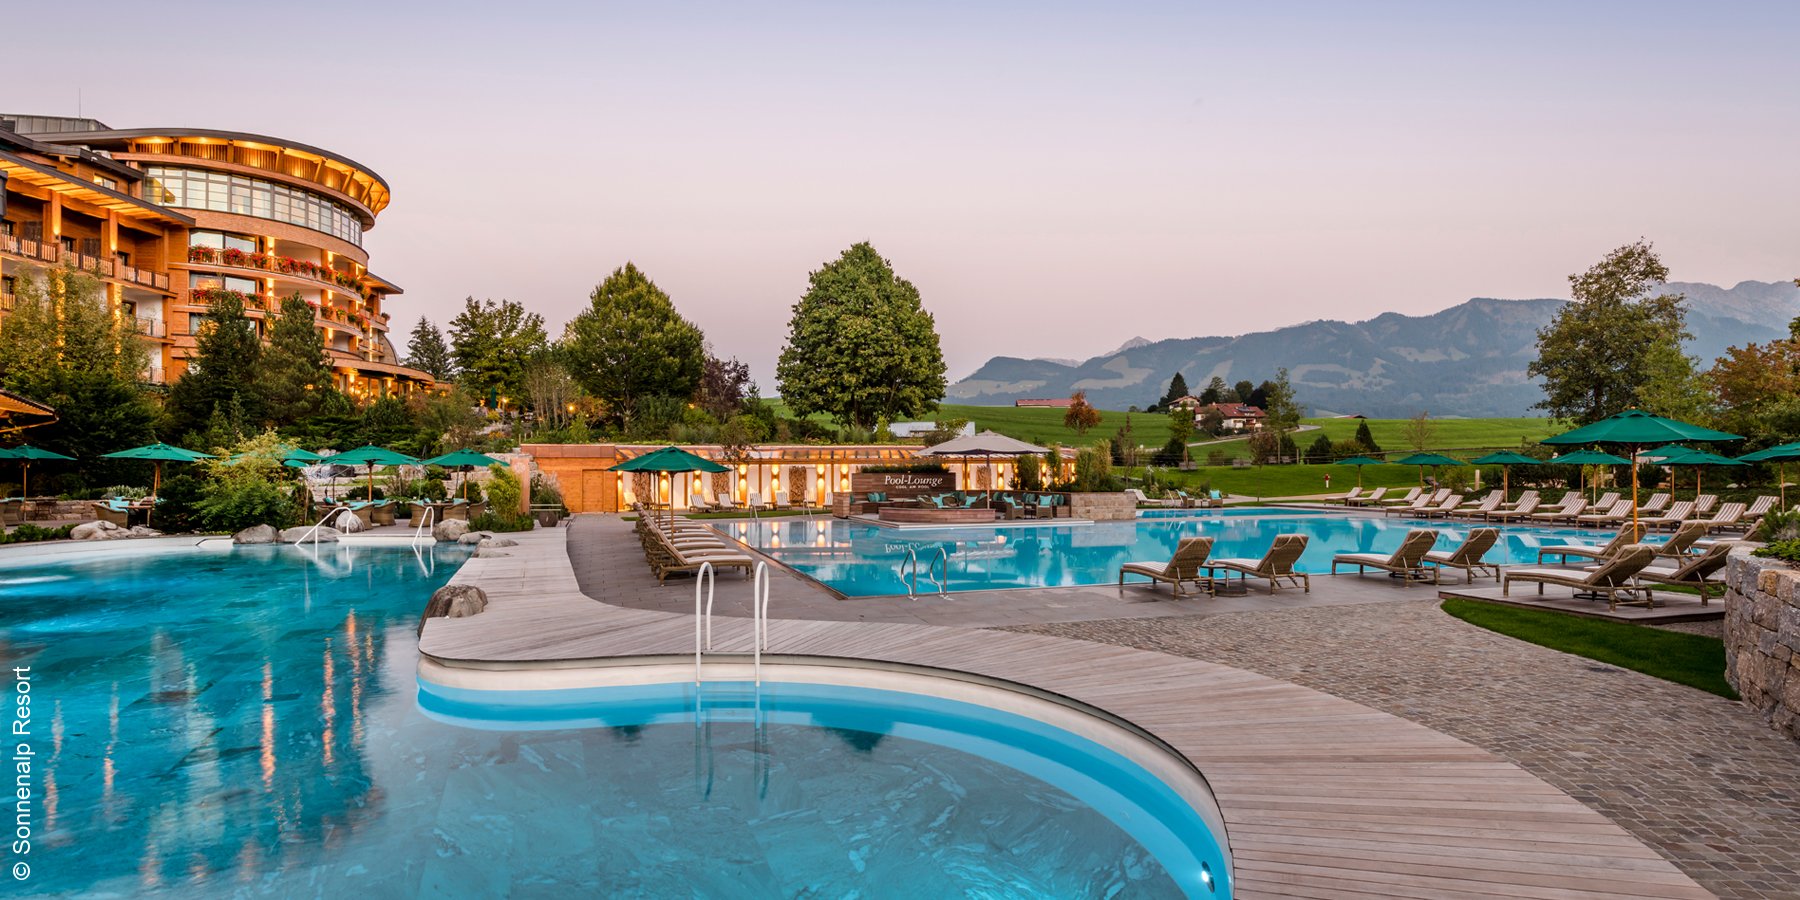 Sonnenalp Resort | Ofterschwang | Aussenpool | luxuszeit.com